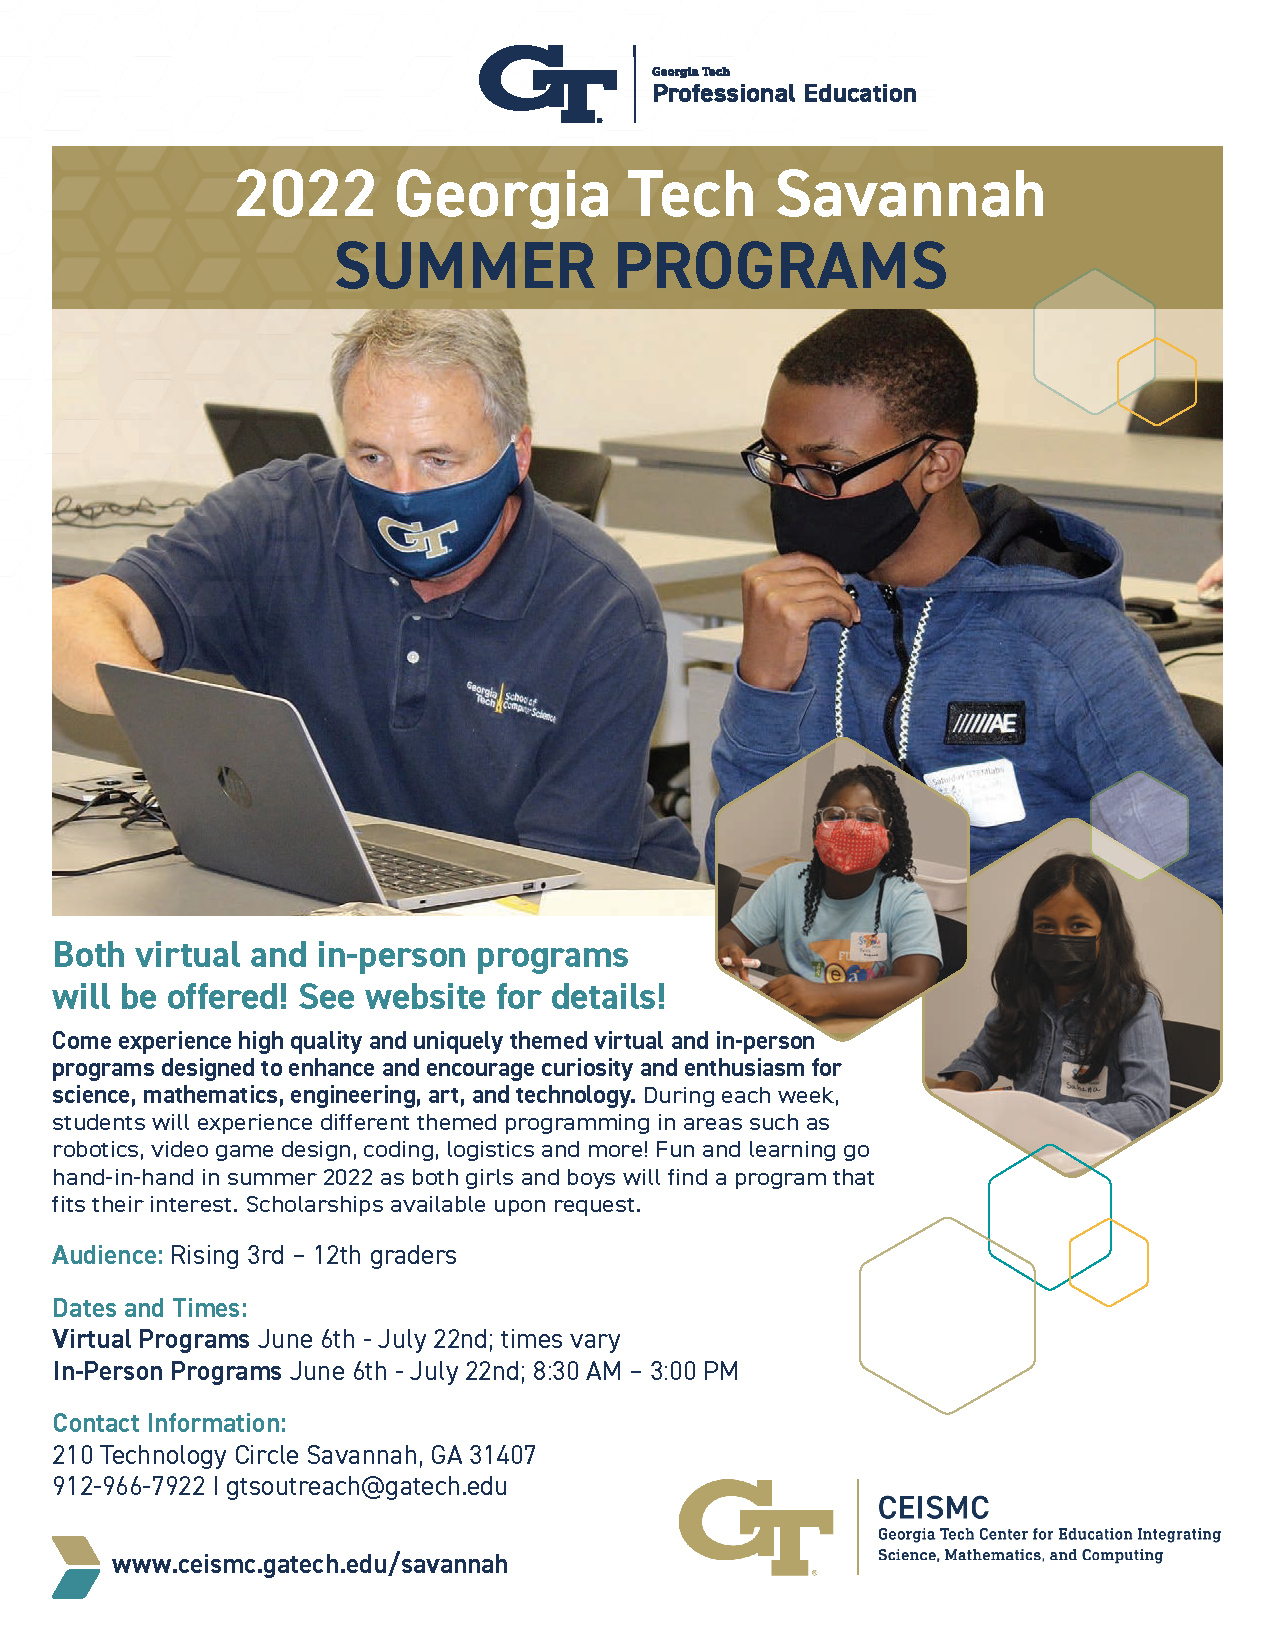 Georgia Tech Summer programs